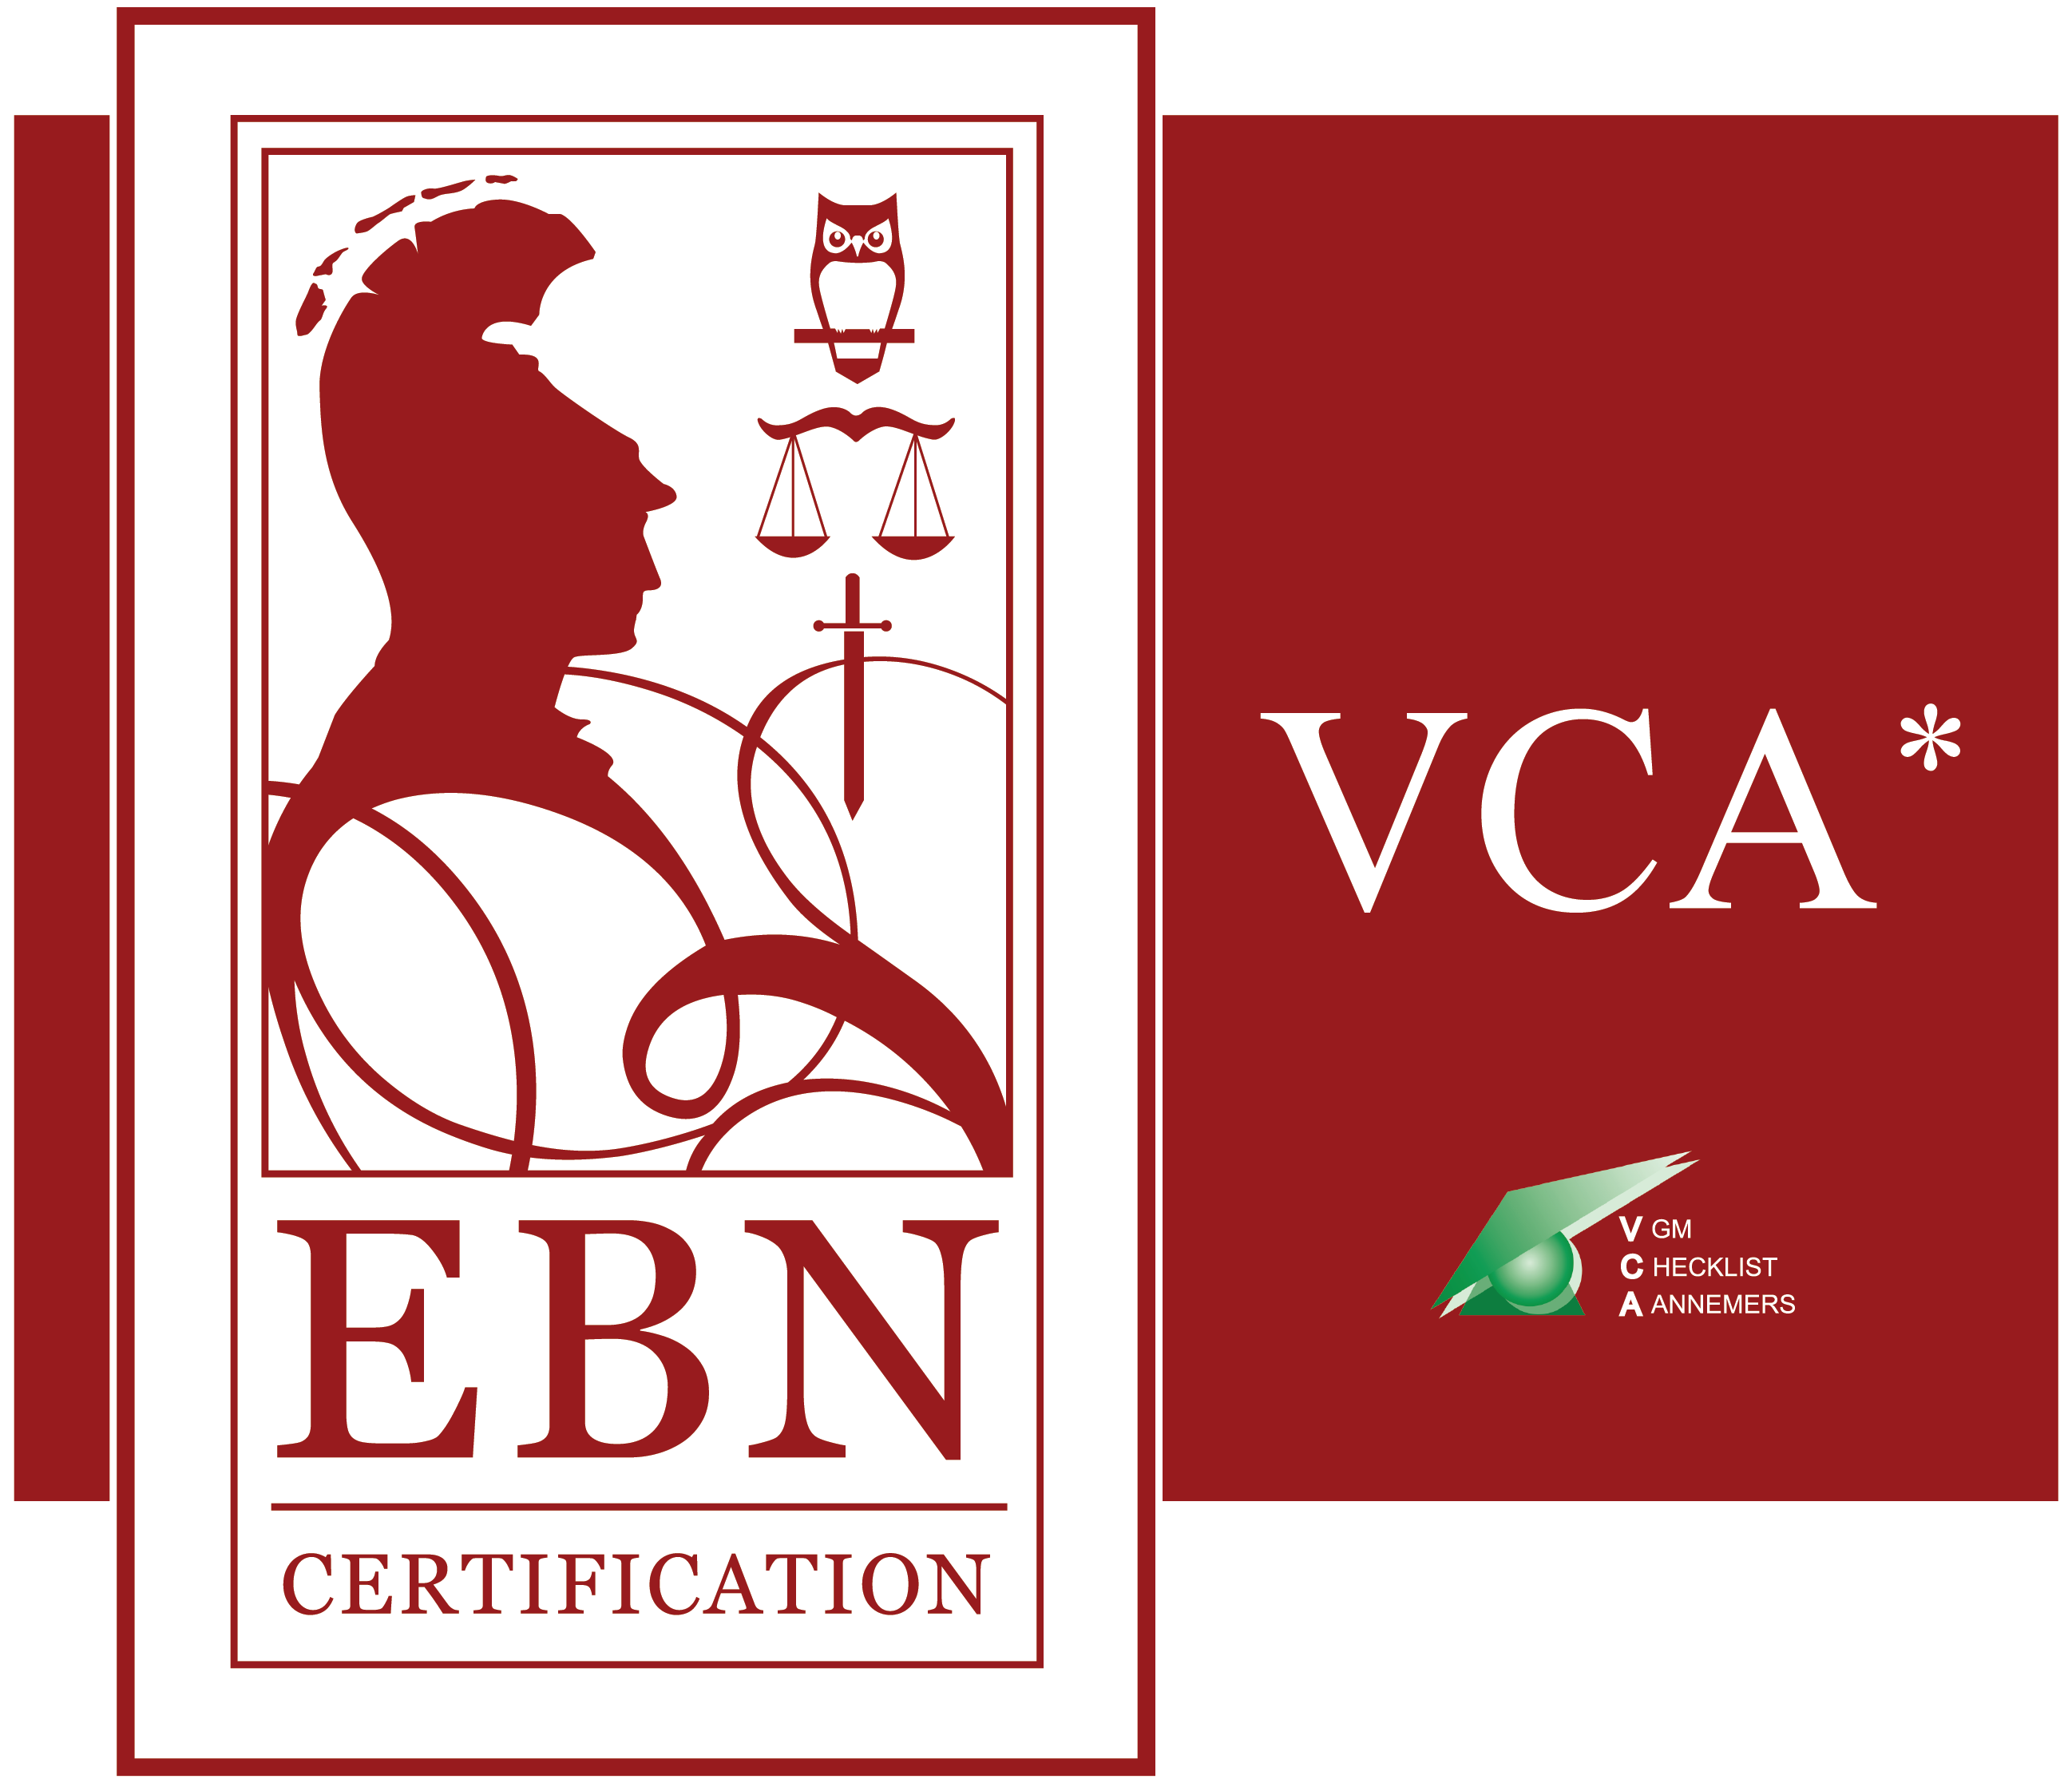 Certificering door EBN. Hiermee tonen we aan dat we staan voor veiligheid, gezondheid en milieu